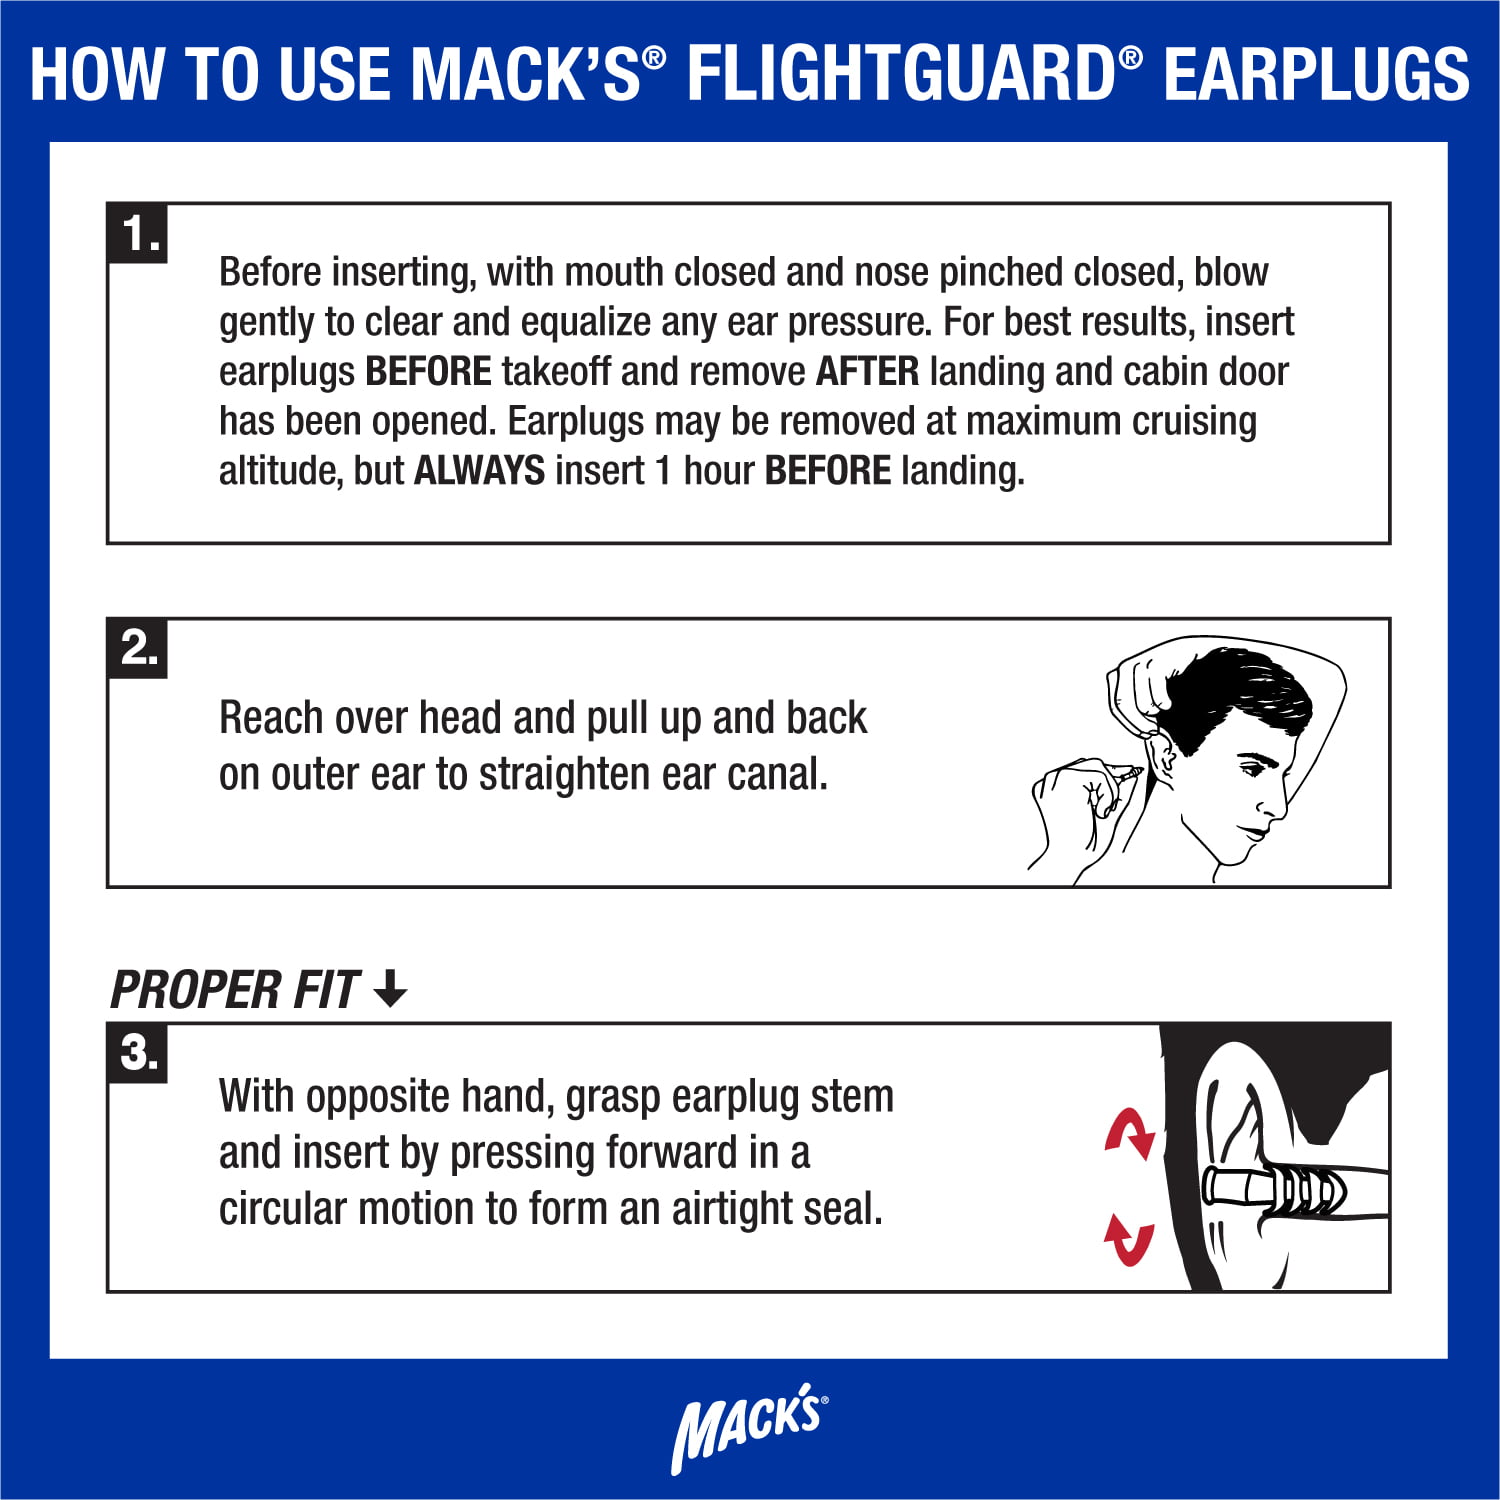 Mack's FlightGuard bouchons d'oreille pour avion - Auriseo